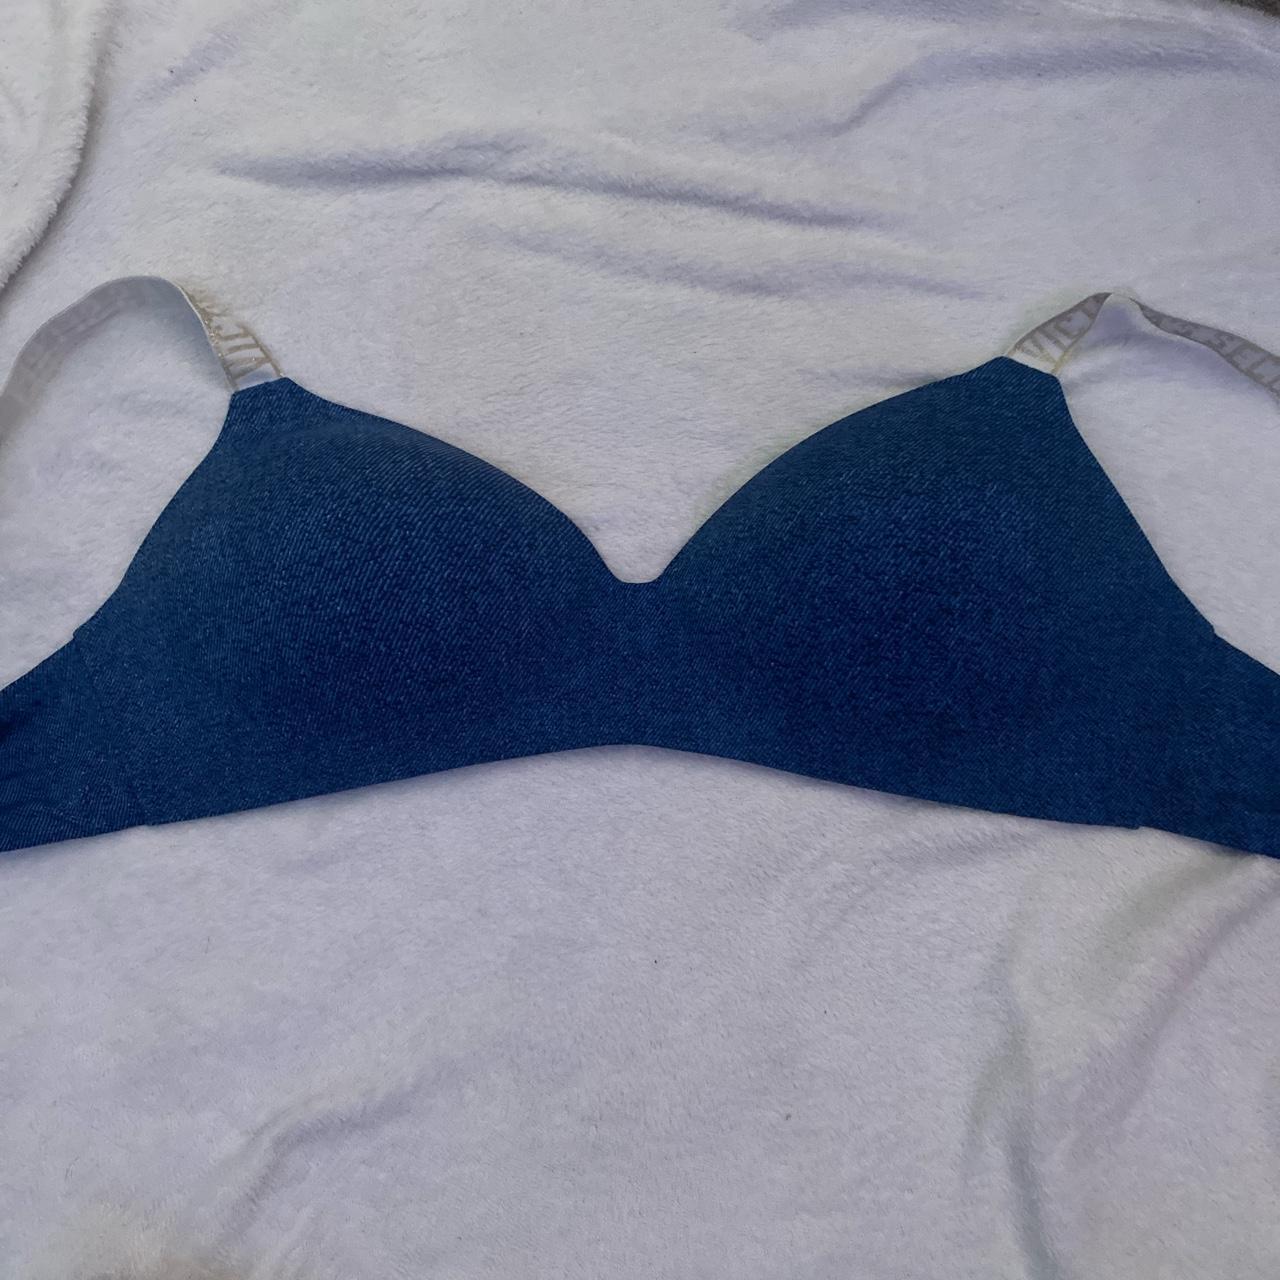 Blue 40D Victoria Secret Bra, great condition - Depop